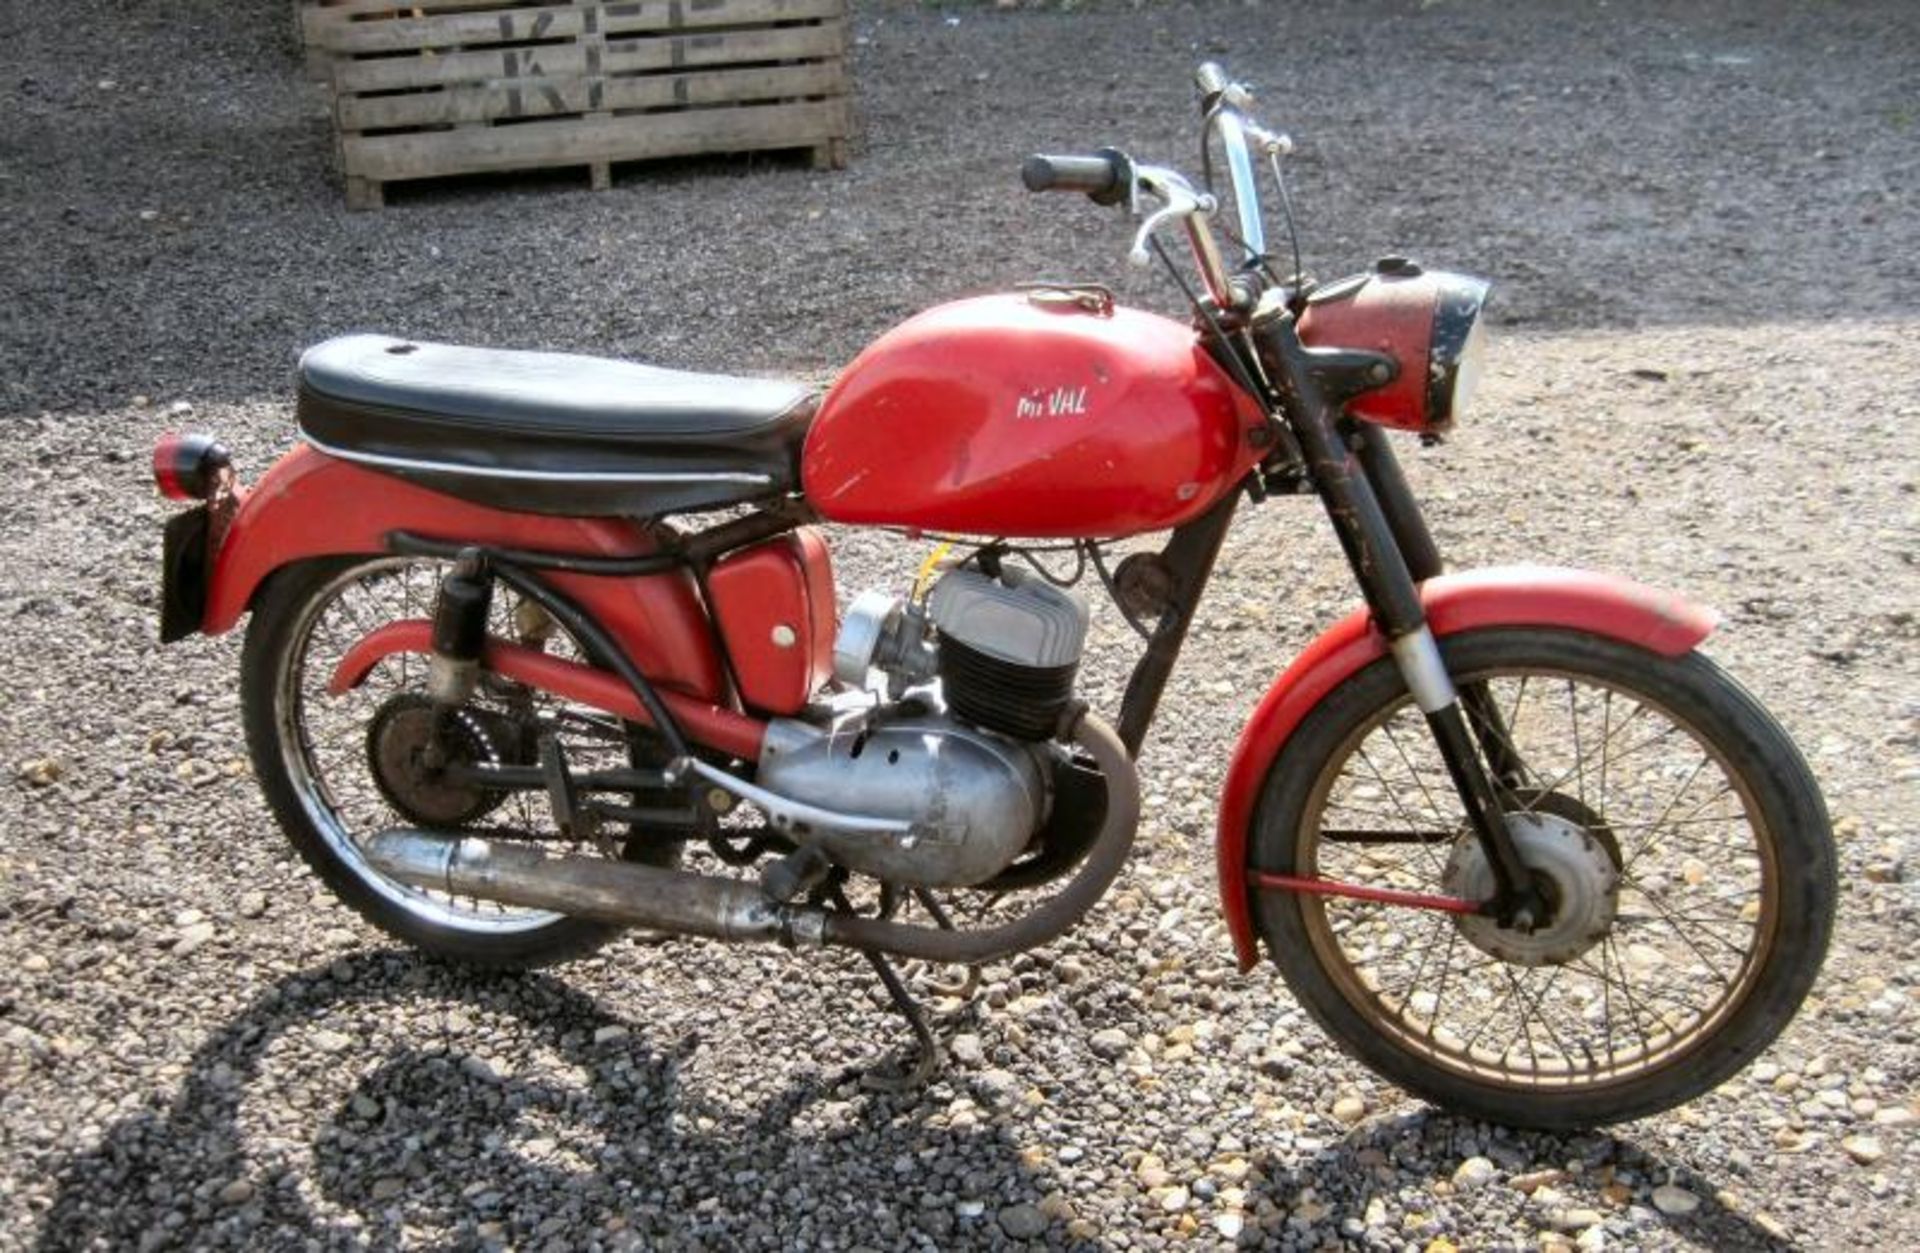 1959 125cc MI-VAL Reg. No. 186 UYT Frame No. 72606 Engine No. 72606 A rare Italian 2-stroke single